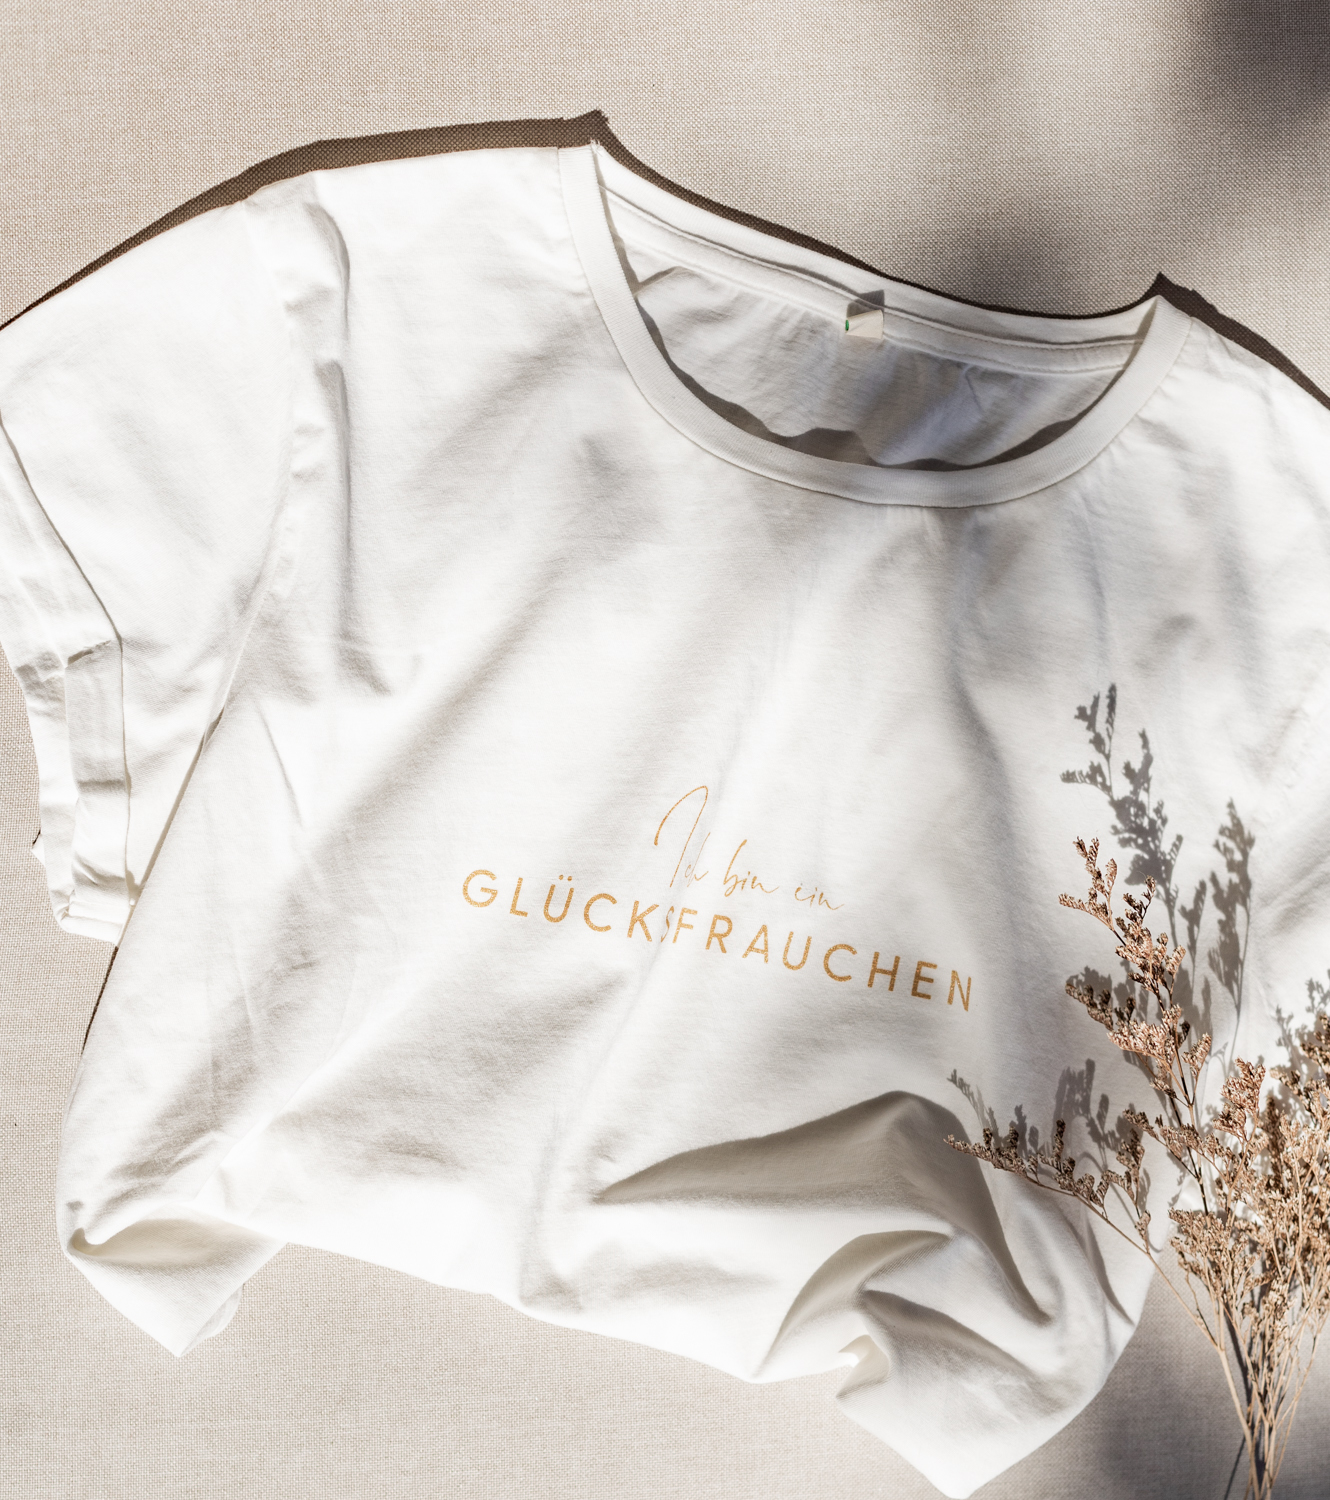 Weisses T-Shirt mit Trockenblumen verziert und Schriftzug Glücksfrauchen